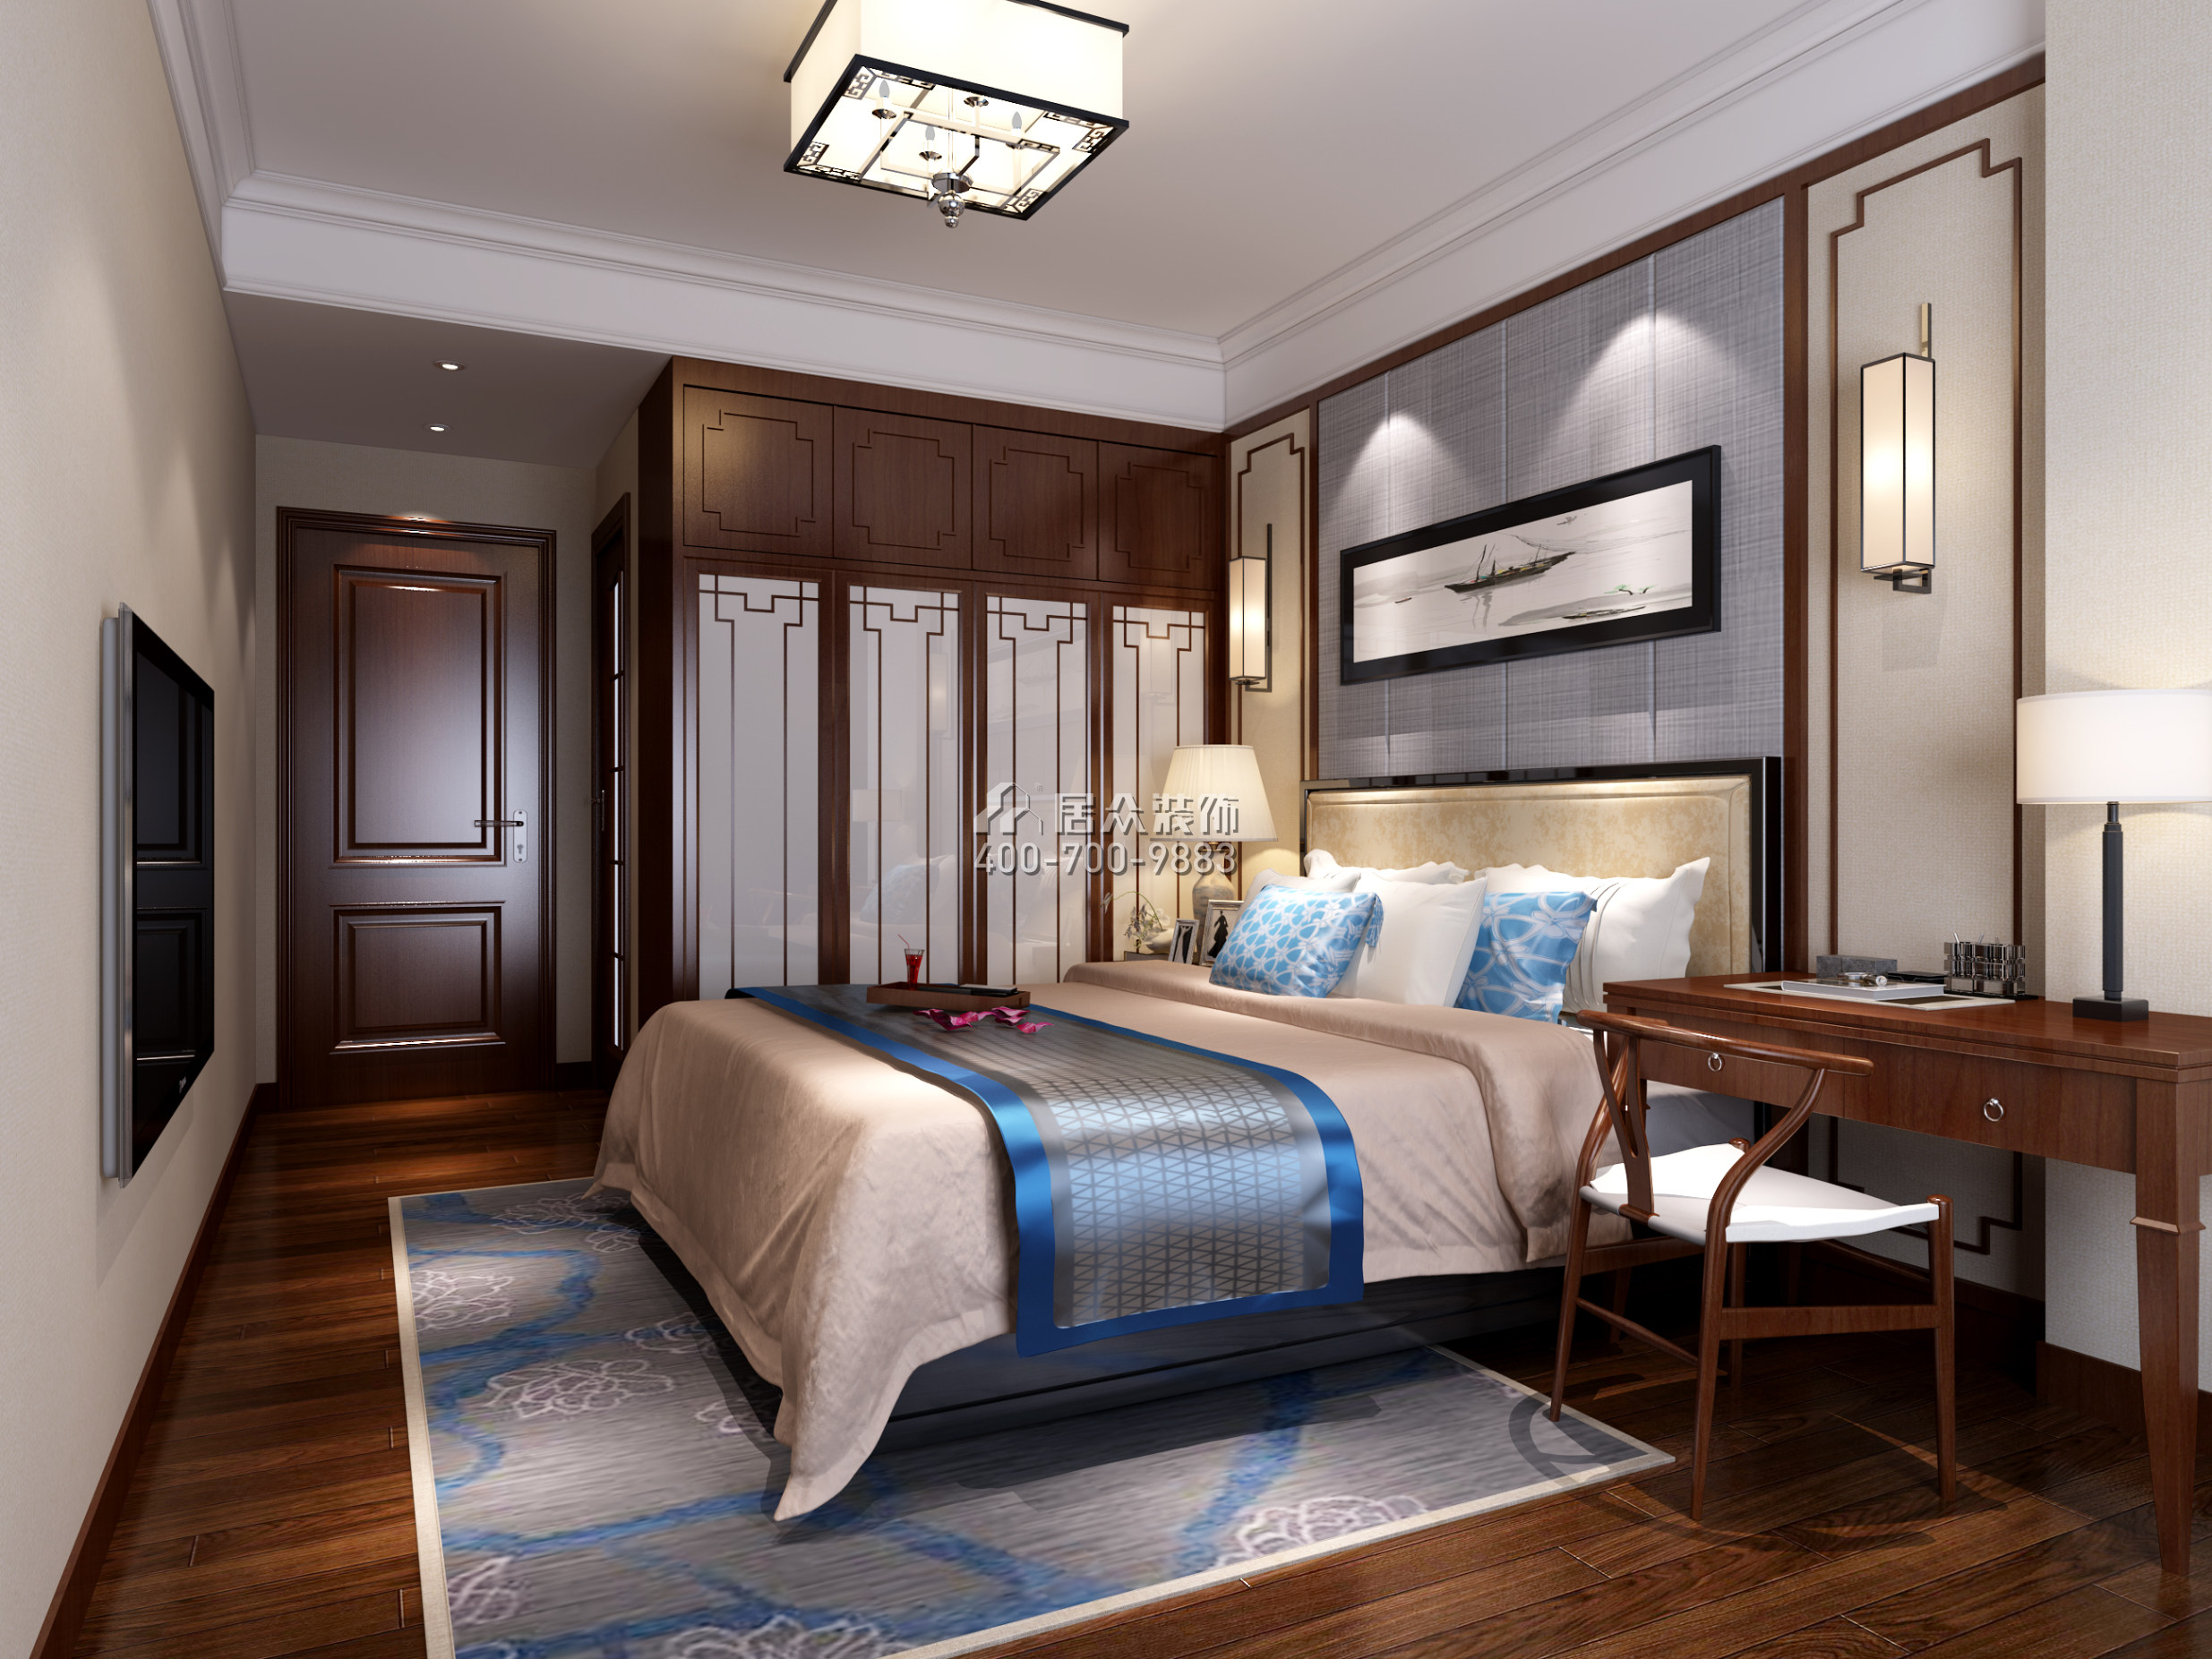 联投东方华府二期112平方米中式风格平层户型卧室装修效果图